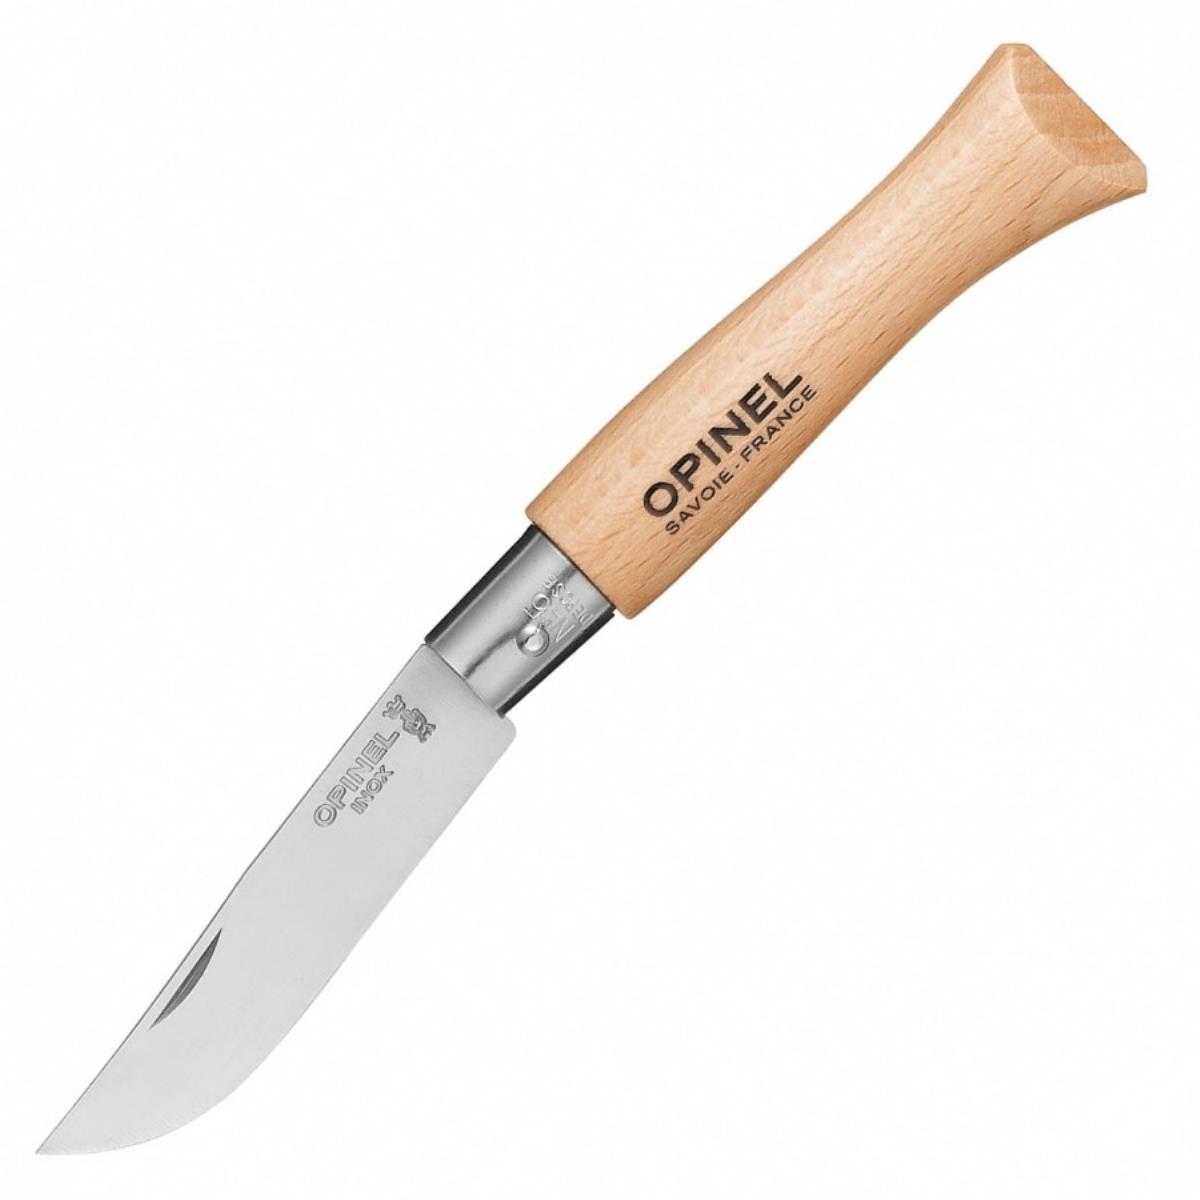 Нож №5 VRI Tradition Inox (нержавеющая сталь, рукоять бук, длина клинка 6 см) 0010729 OPINEL мультитул boker specialist ii рукоять сталь